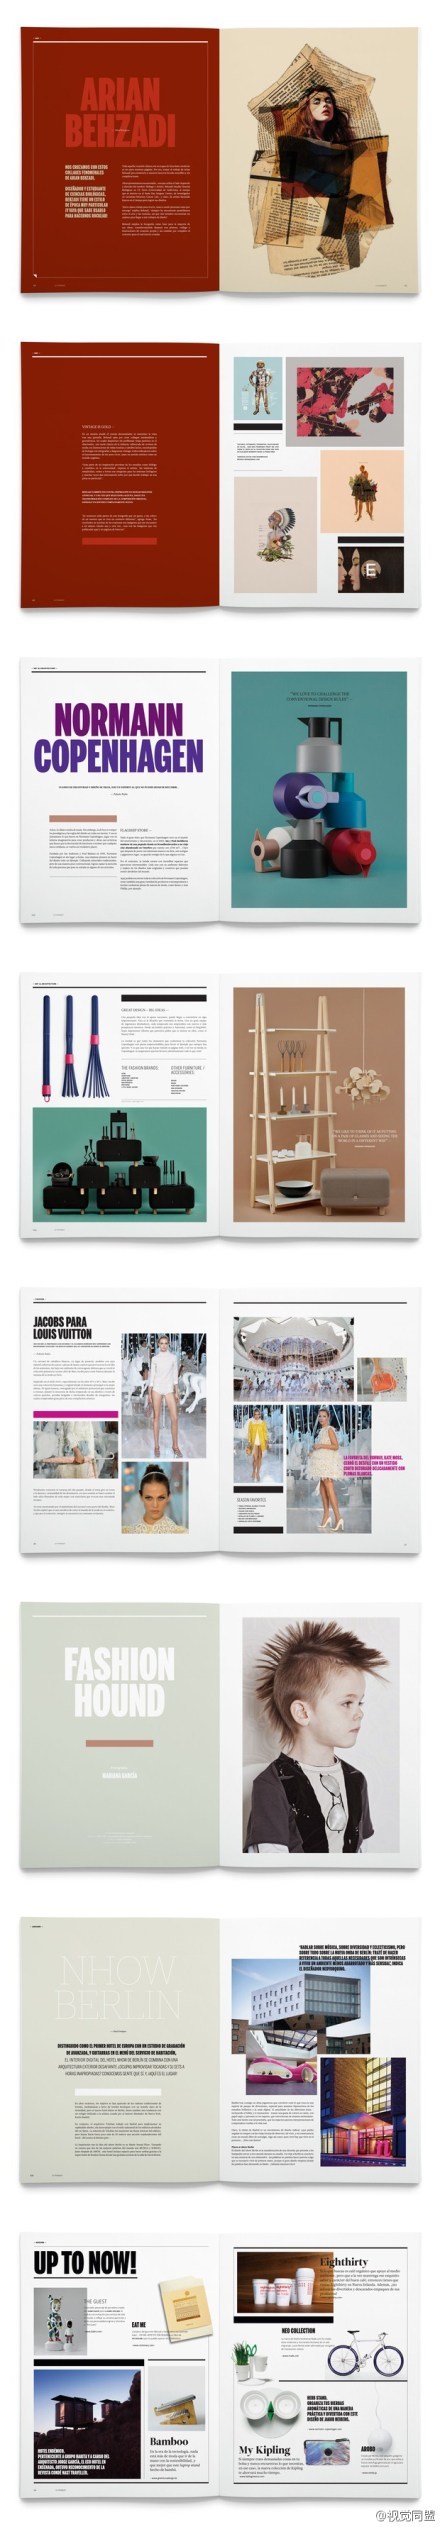 杂志 内页 封面 排版 创意画册 时尚画册 高档画册设计 大气画册设计